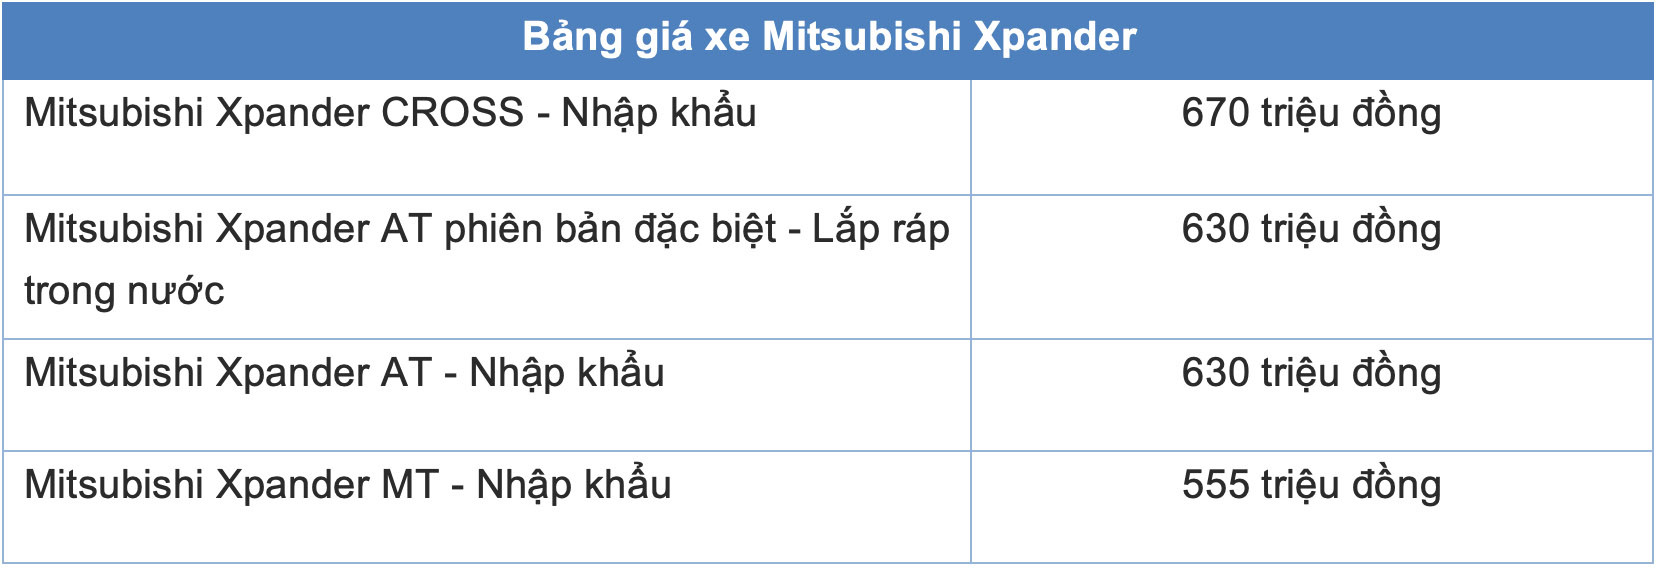 Bảng giá xe Mitsubishi Xpander